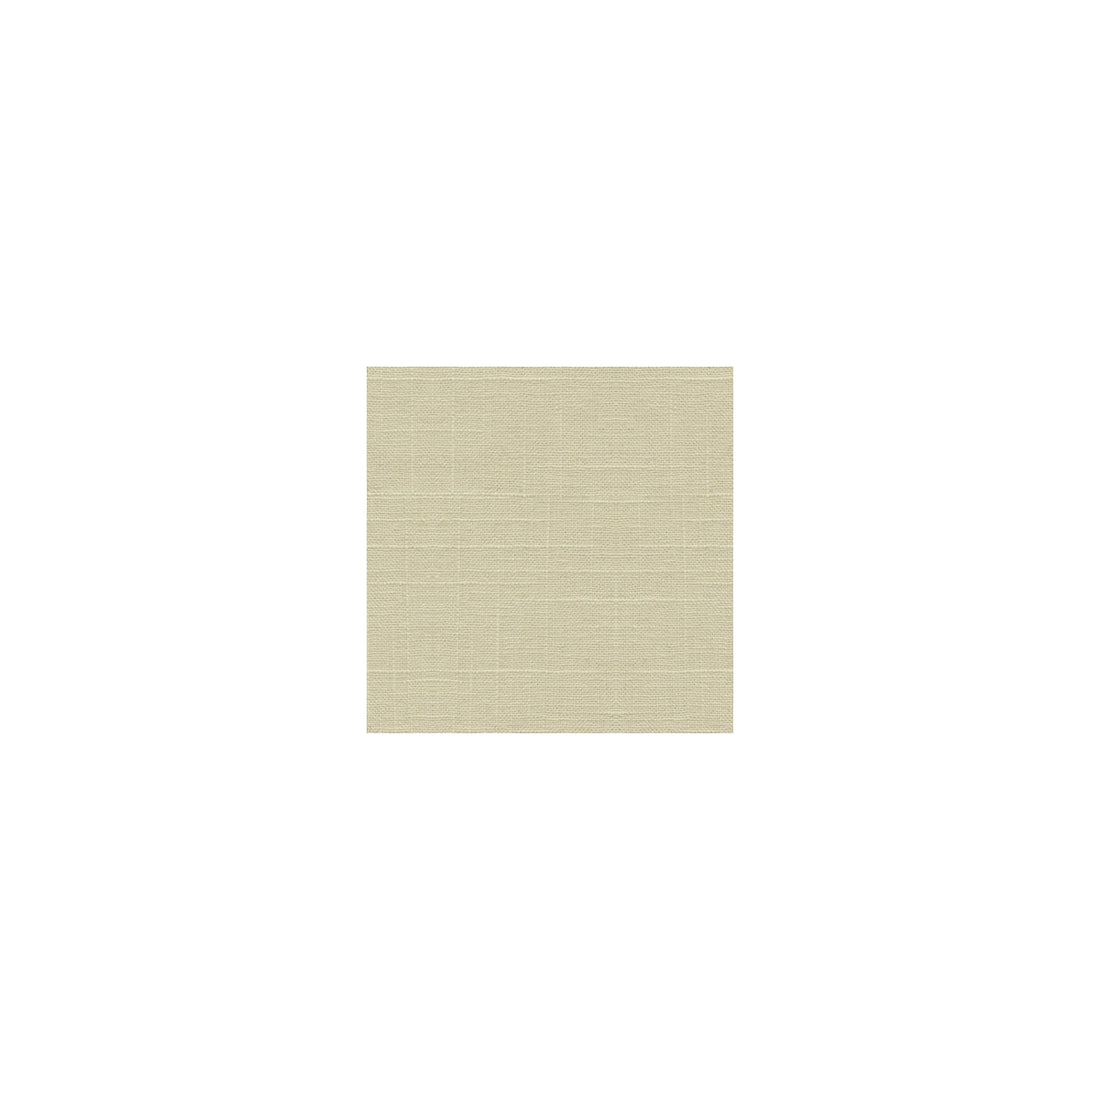 Kravet Basics fabric in 30808-1 color - pattern 30808.1.0 - by Kravet Basics